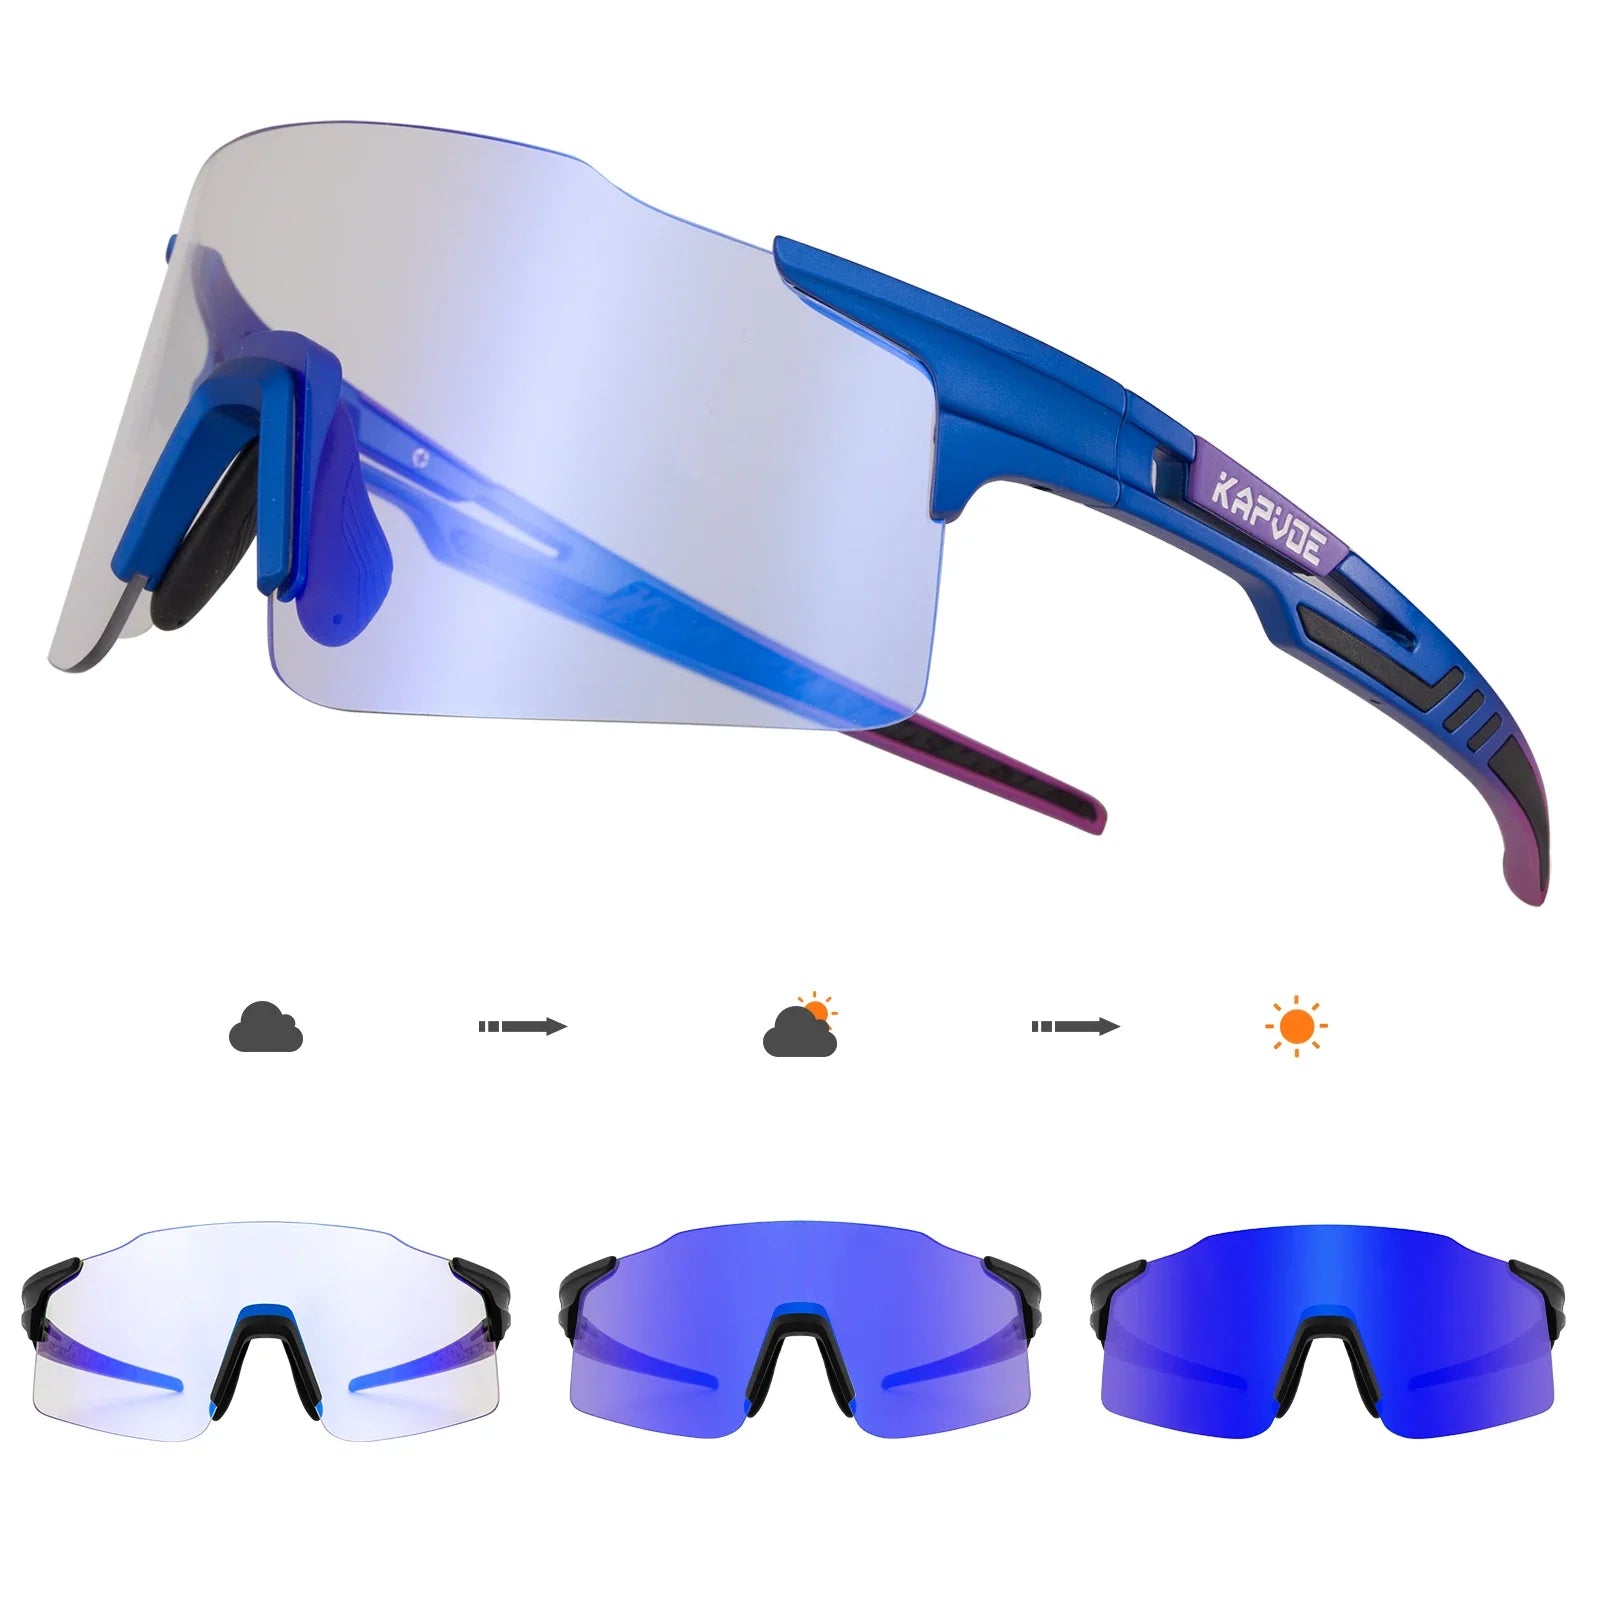 óculos para ciclismo, oculos de ciclismo, oculos ciclista, óculos ciclista, oculos ciclismo feminino, oculos ciclismo, oculos bike